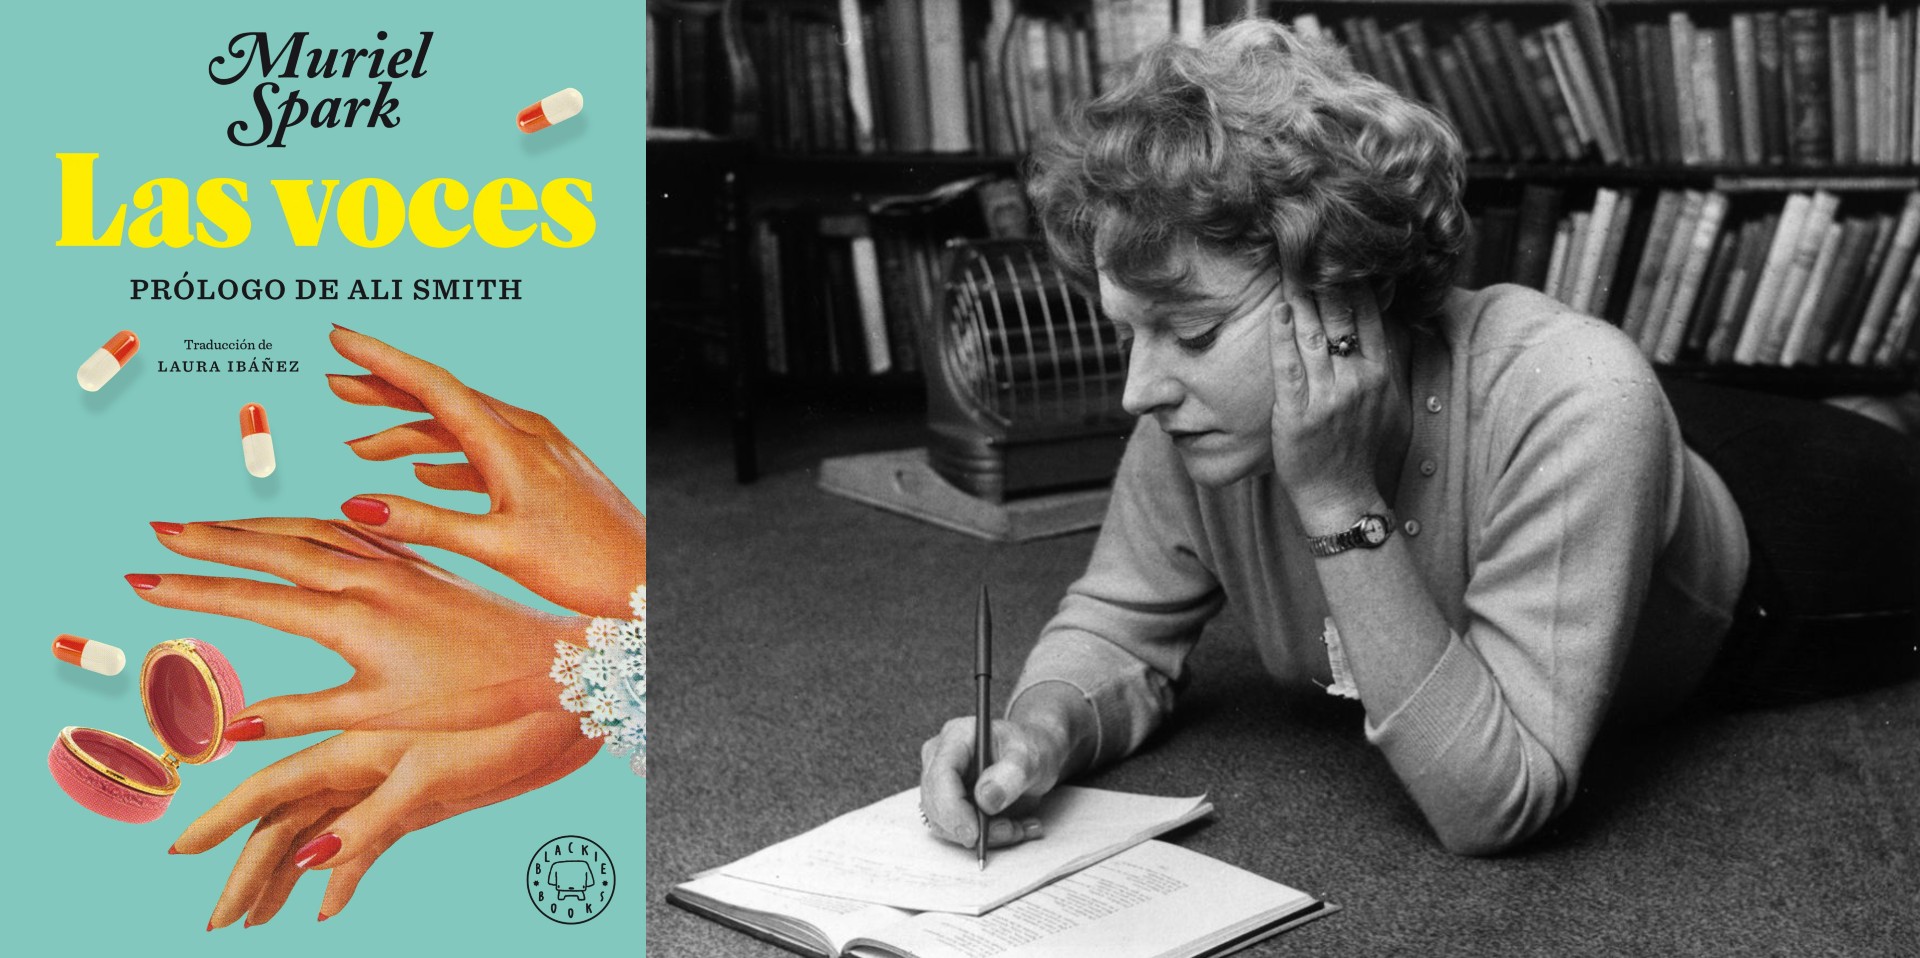 Blackie Books publica una nueva edición de "Las voces", la primera novela de Muriel Spark, con traducción de Laura Ibáñez.